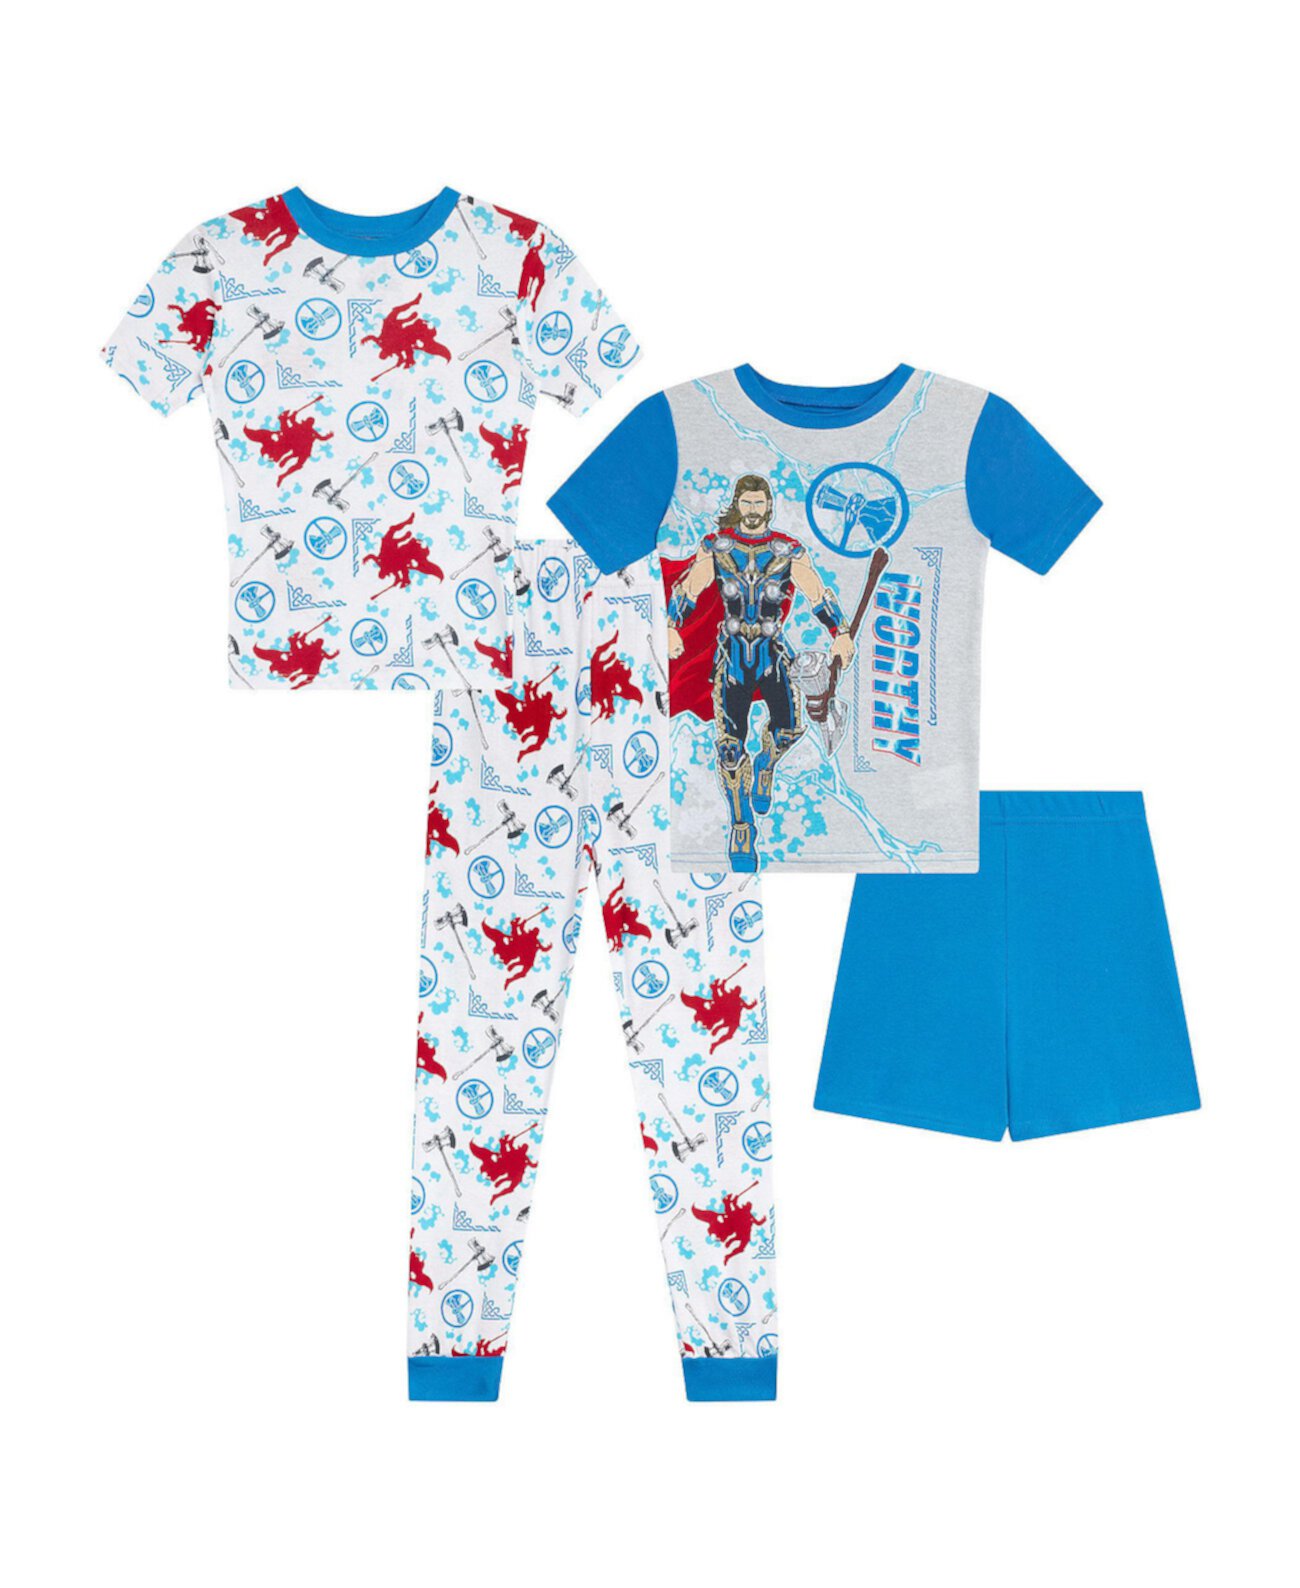 Футболки, пижамы и шорты для маленьких мальчиков, комплект из 4 предметов Thor